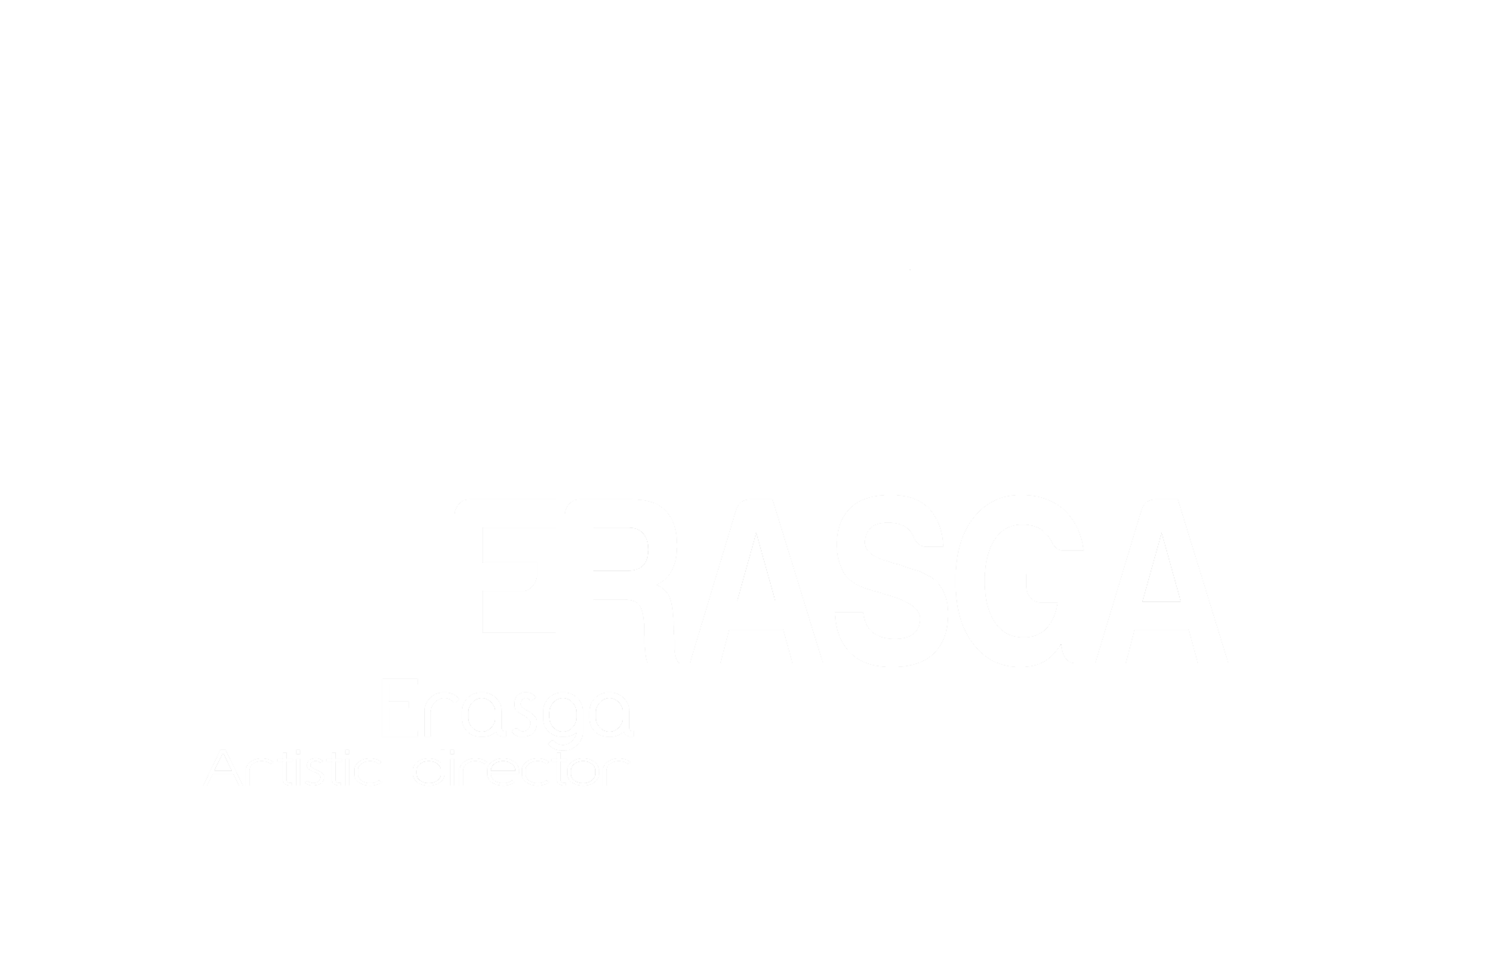 Co.ERASGA